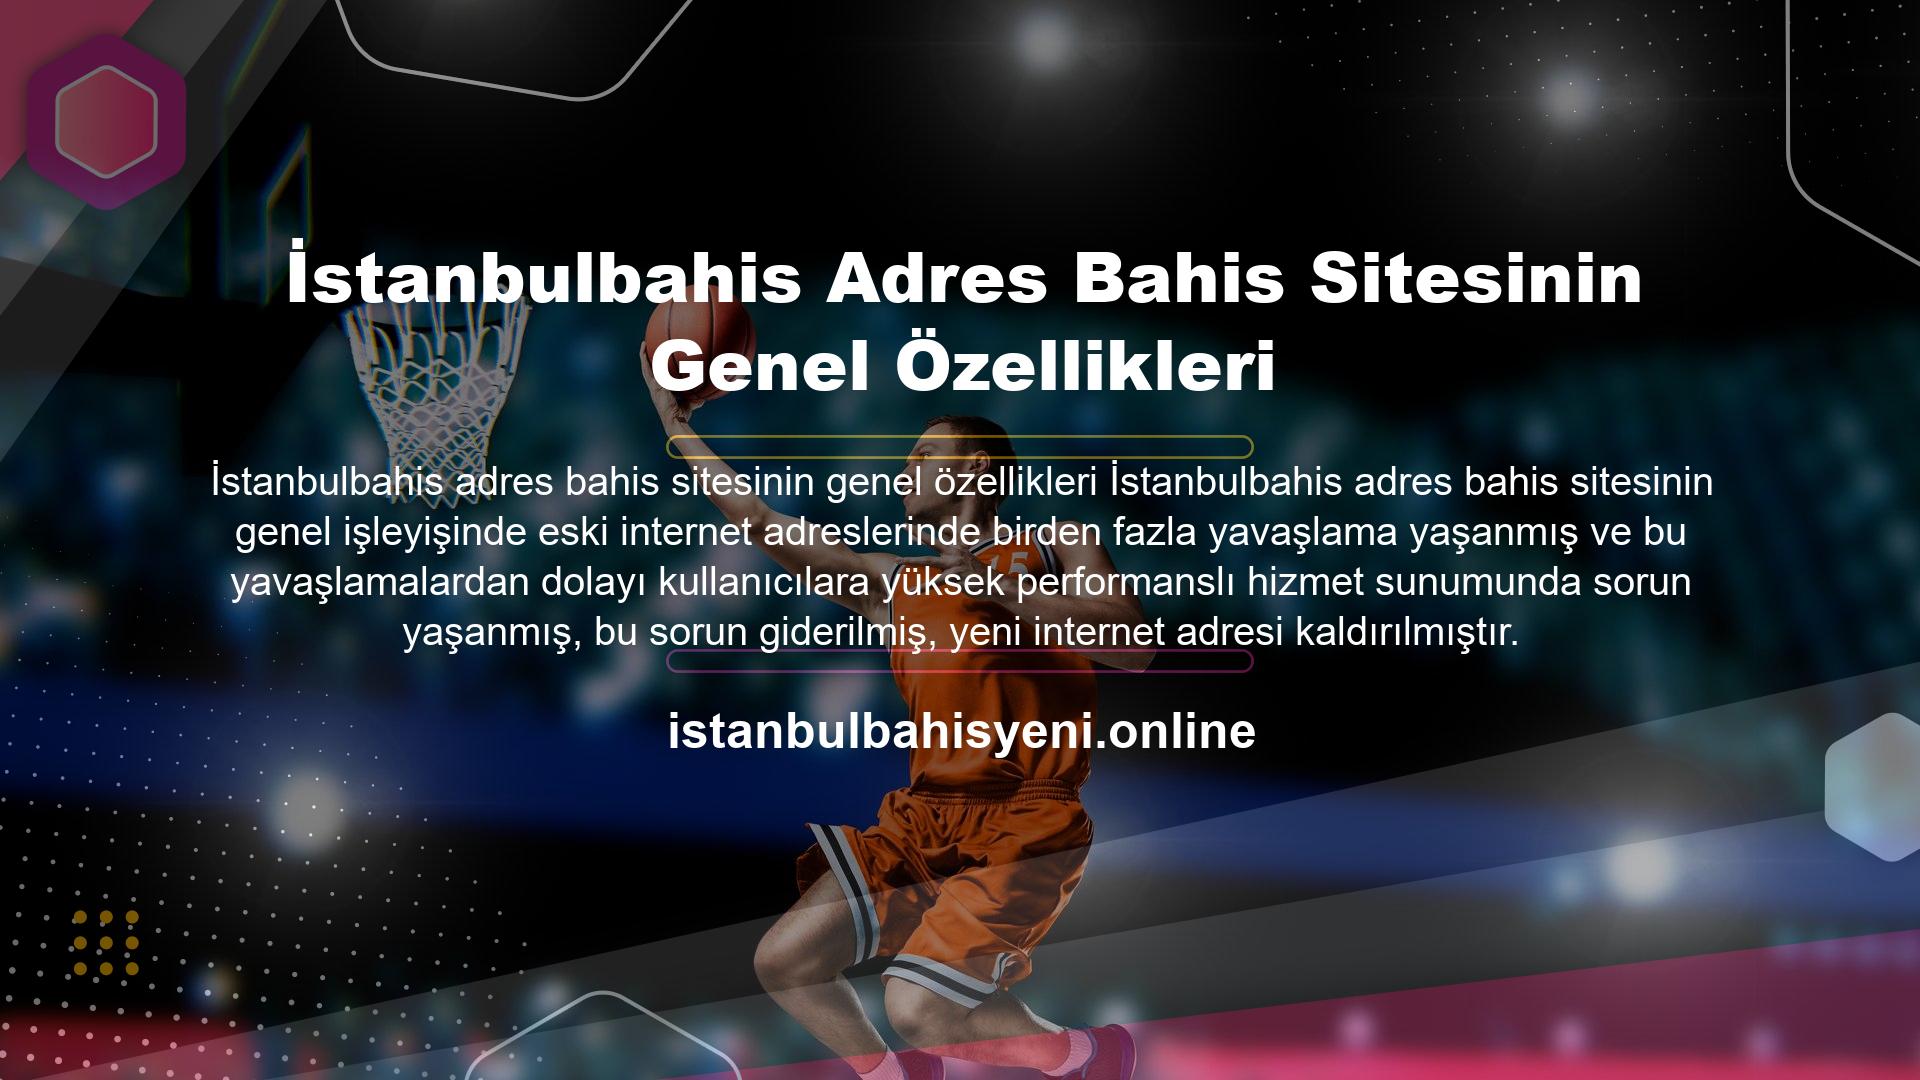 İstanbulbahis, yeni giriş adresi ile kullanıcılarına en hızlı performansı sunmayı hedefliyor